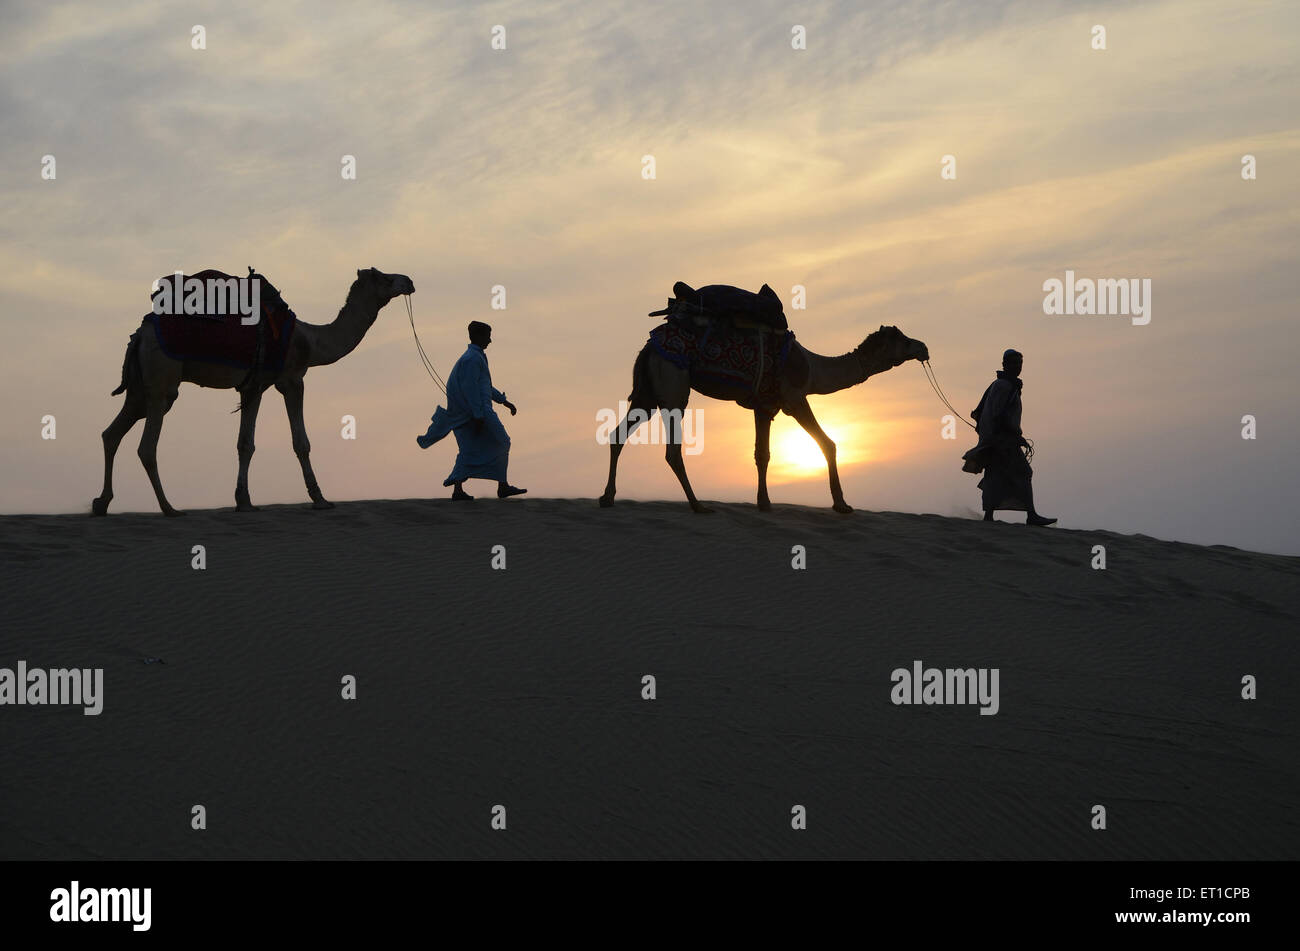 Les chameaux et les hommes marchent sur des dunes de sable de coucher du soleil à Jaisalmer au Rajasthan Inde Banque D'Images